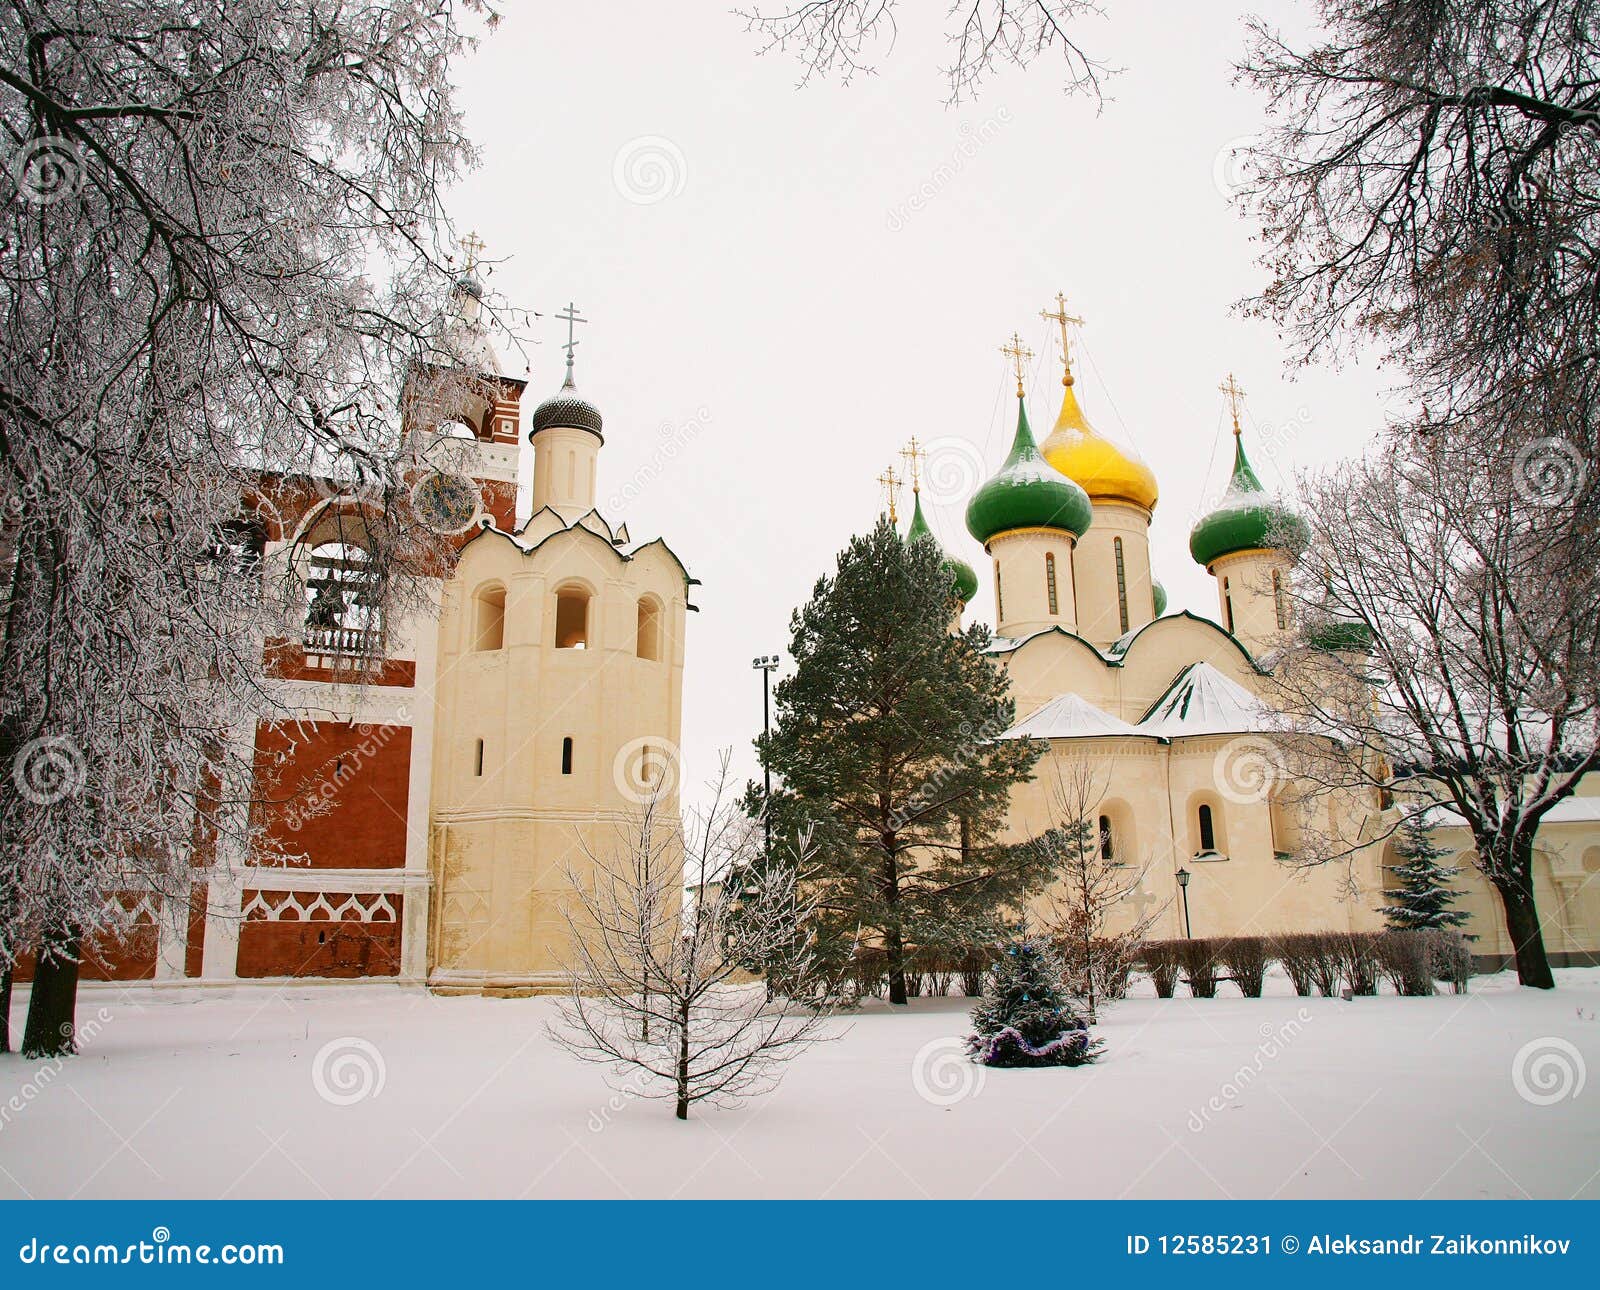 La Russie orthodoxe. Monastère de Spaso-Evfimiev. Suzdal - une de villes de la boucle d'or de la Russie en hiver. Cathédrale de beffroi et de Spaso-Preobrazhenskiy d'un monastère de Spaso-Evfimiev.